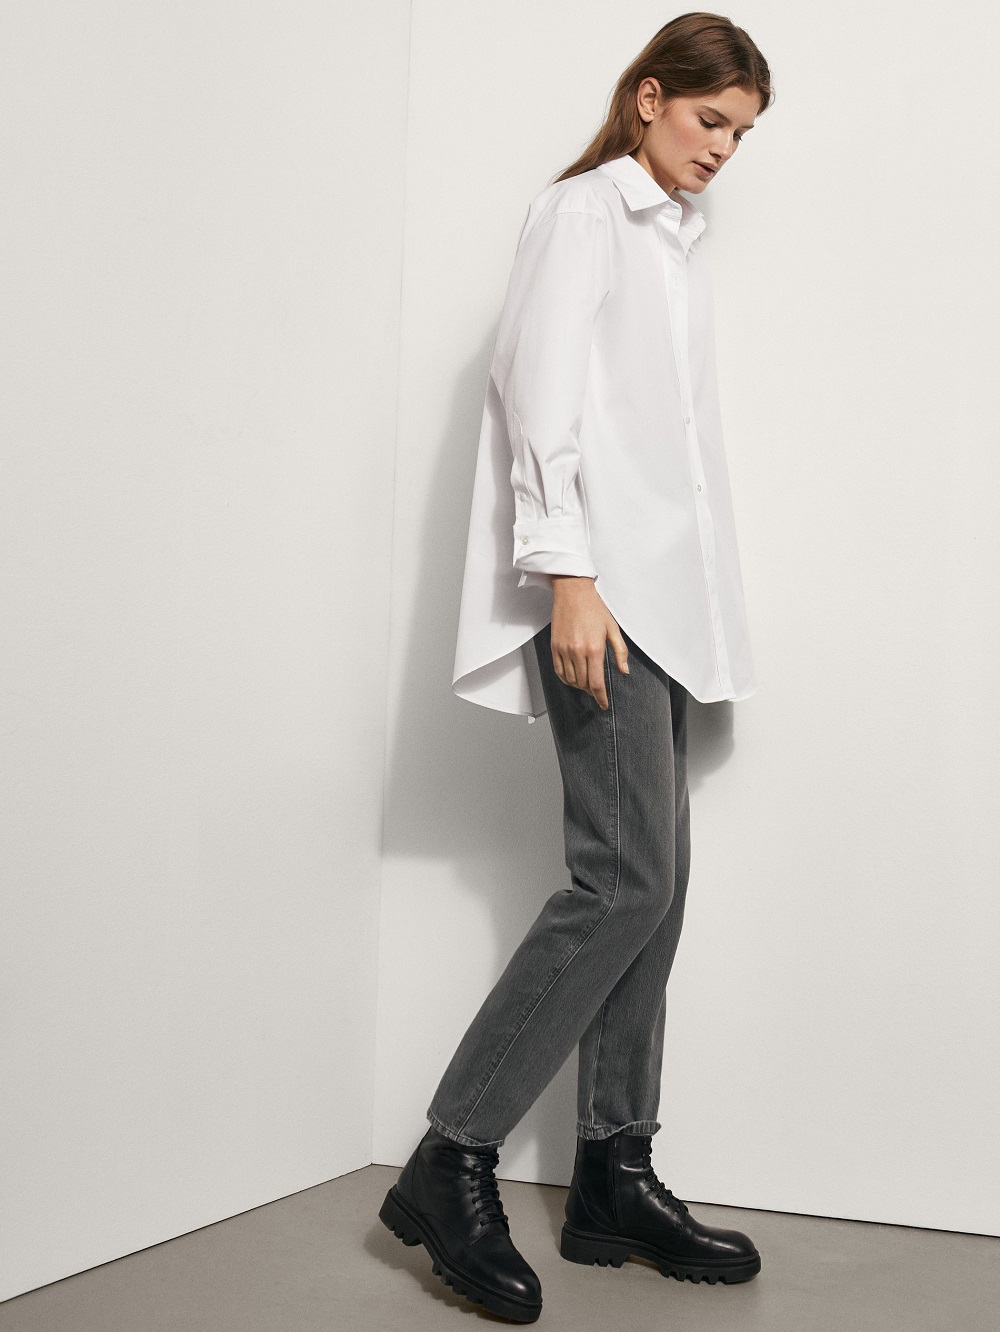 Massimo Dutti bijela košulja proljeće 2021.